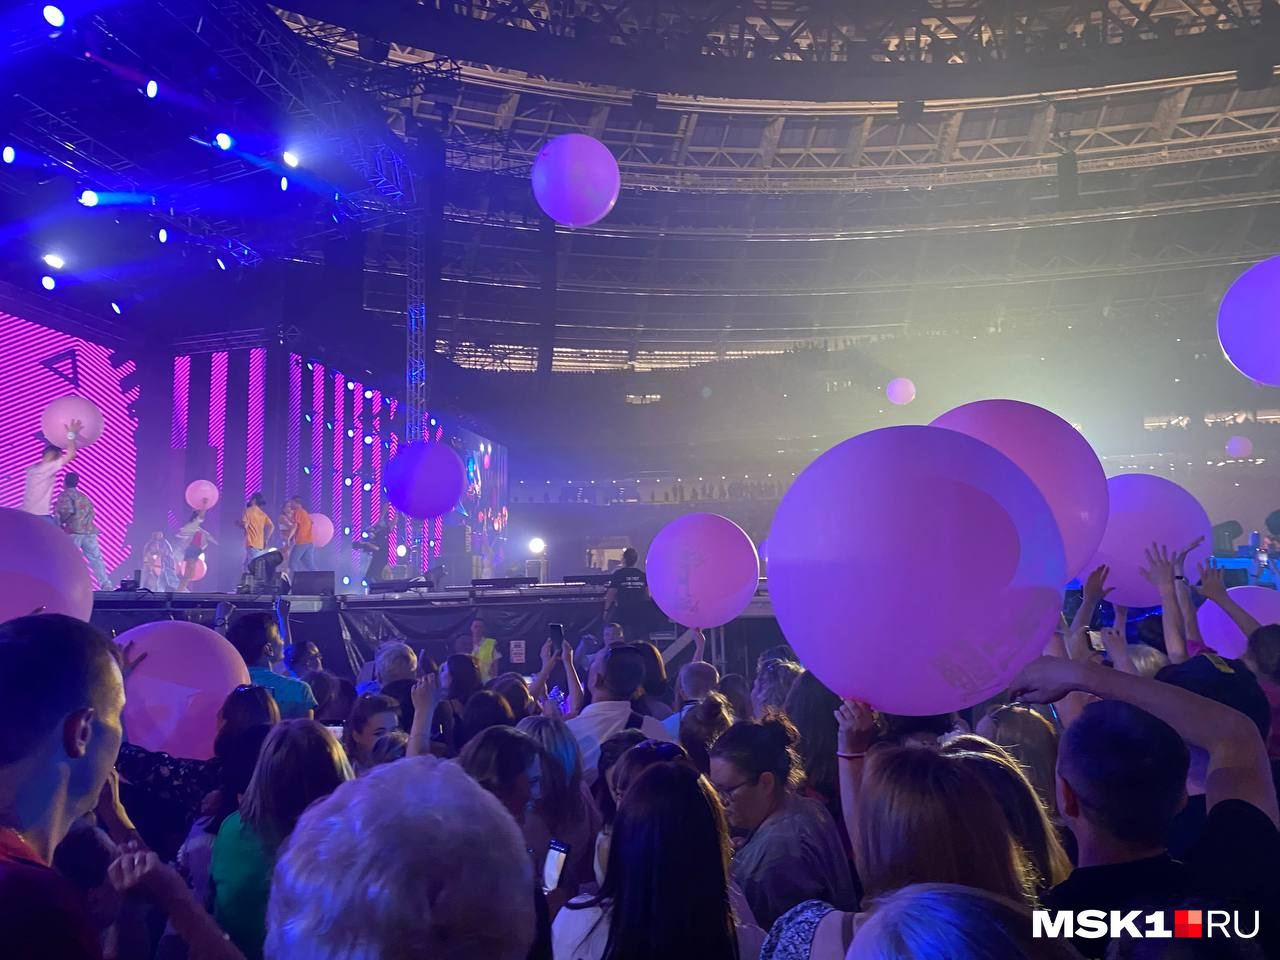 В конце концерта в зал бросили шары, которые лежали за сценой